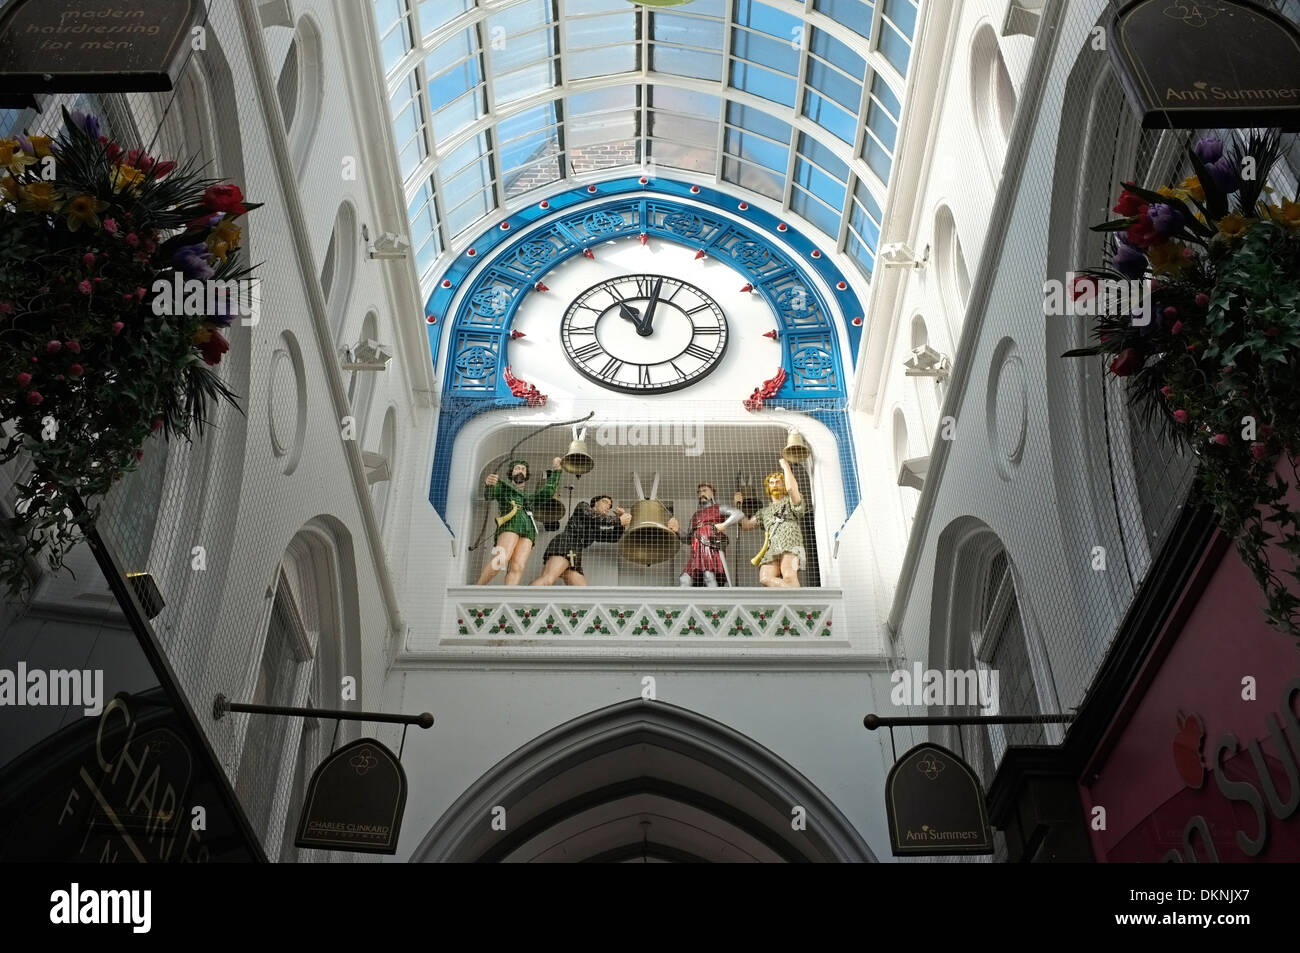 L'horloge et le tintement des cloches à Thorntons Arcade, Leeds Banque D'Images